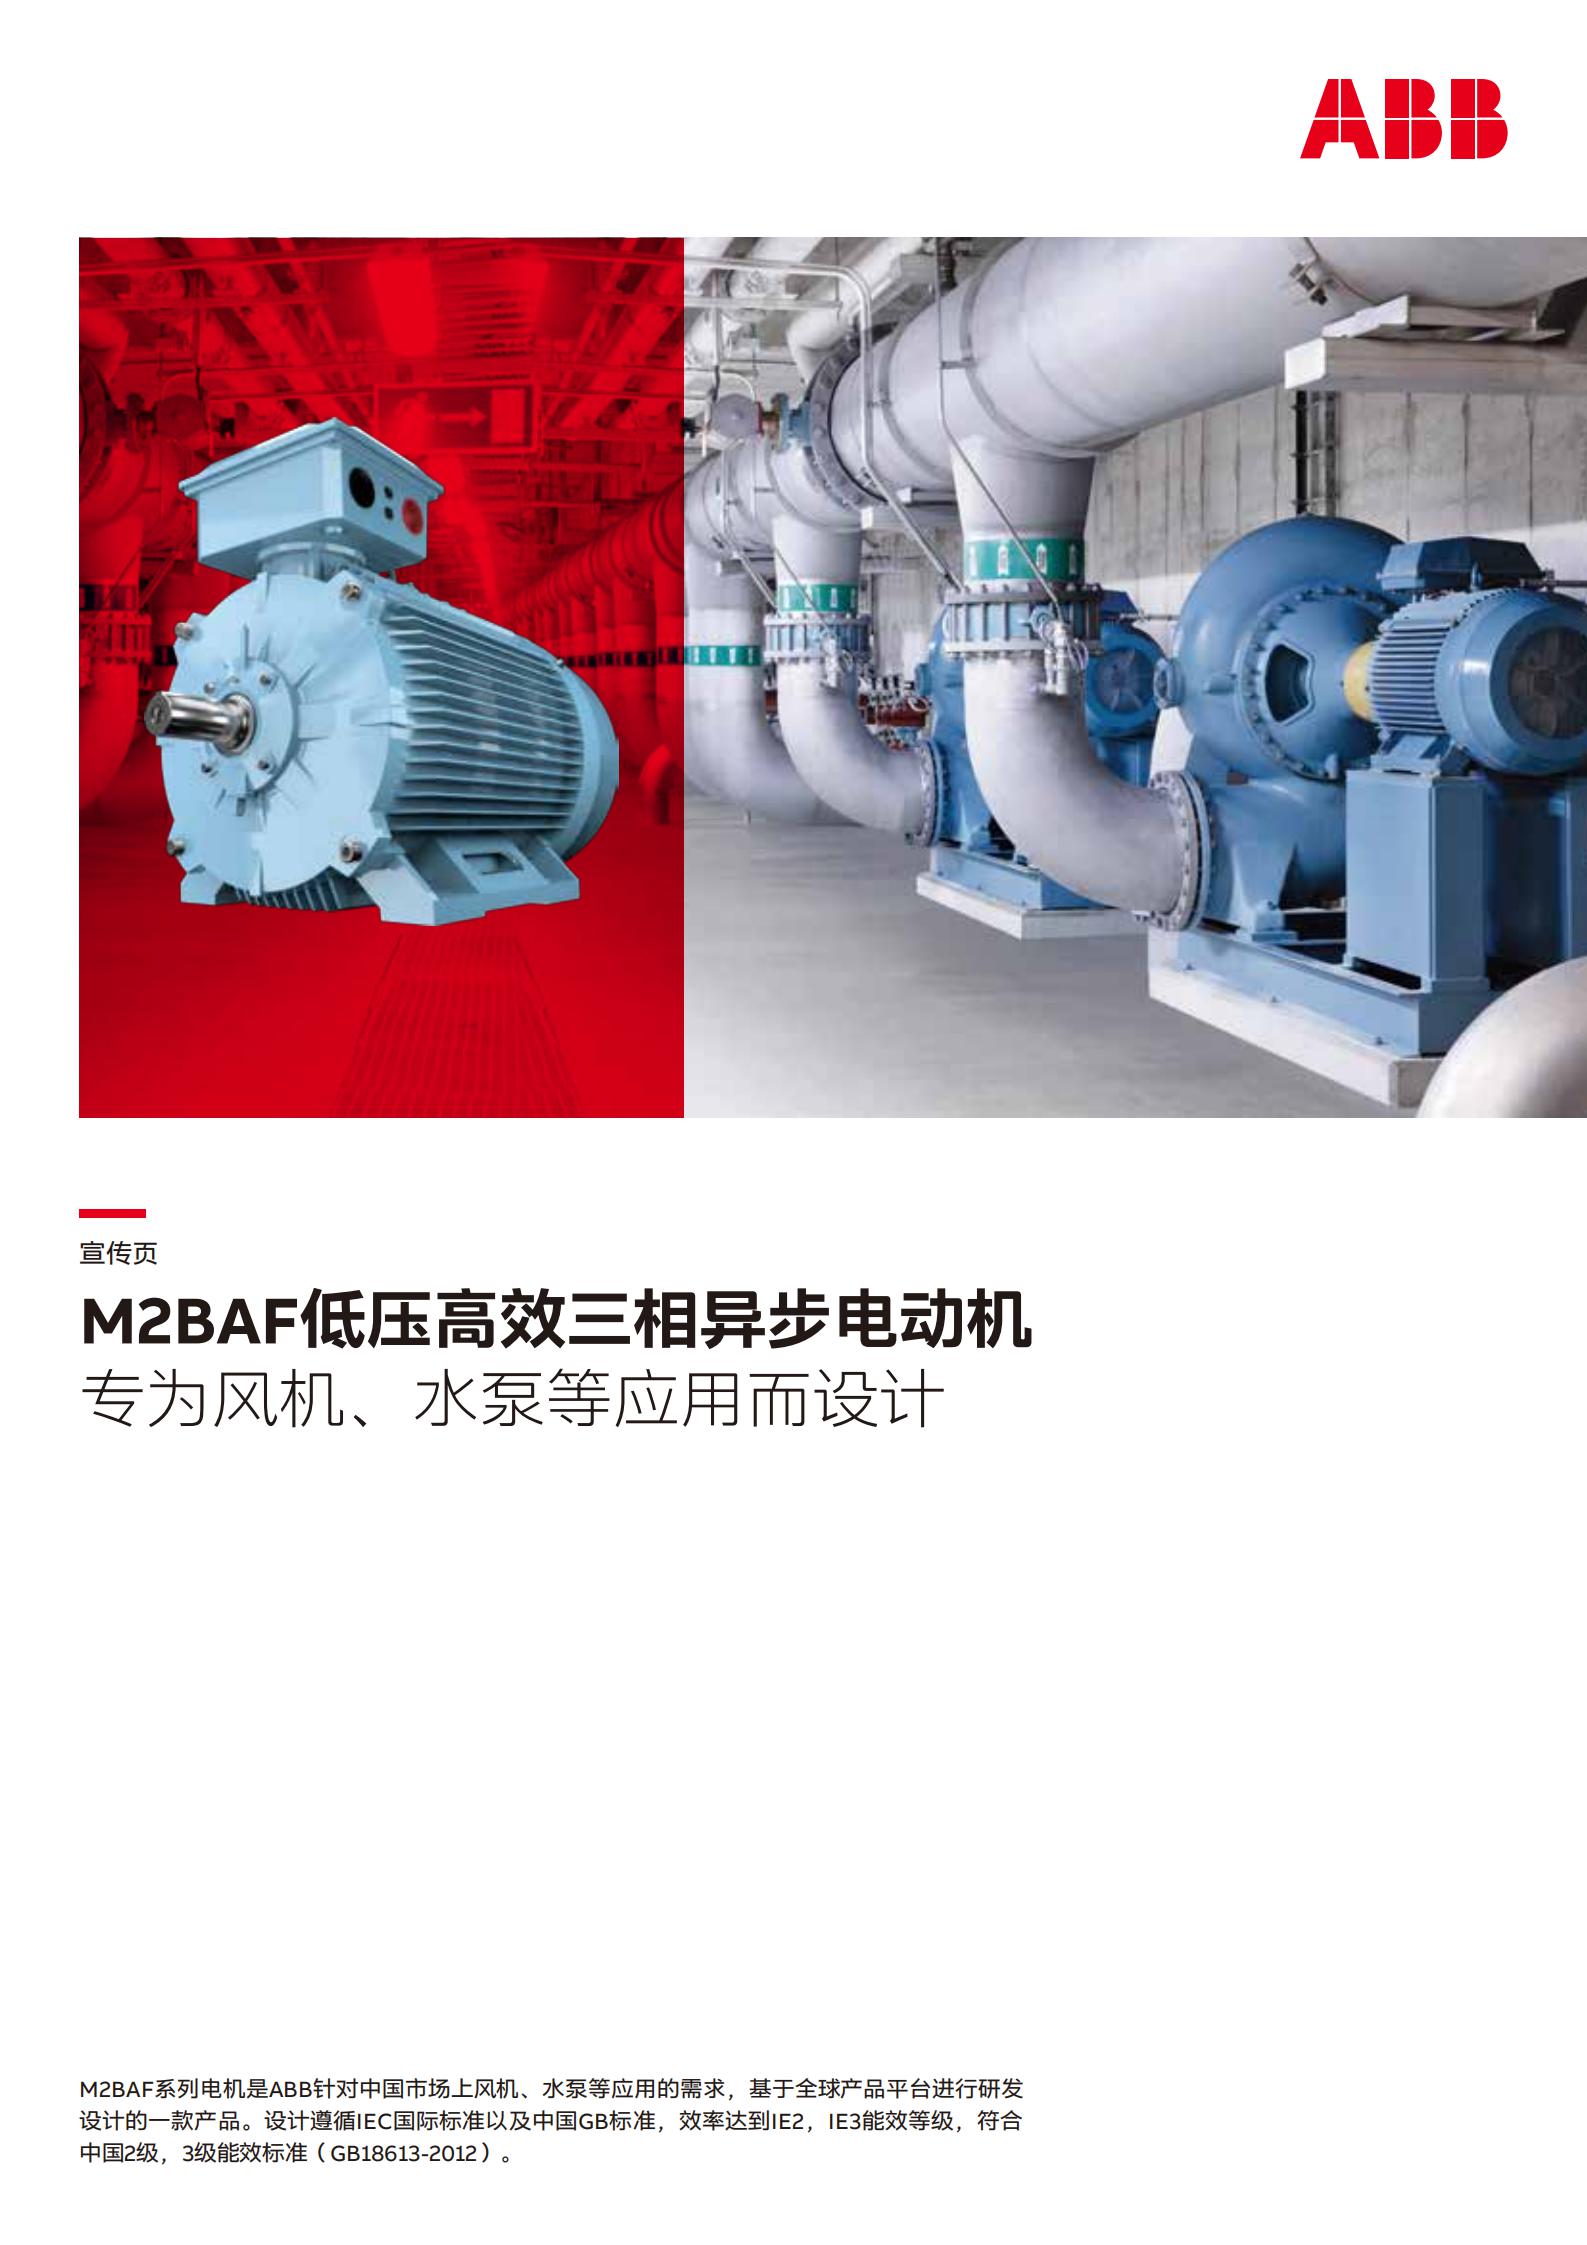 M2BAF低压一般用途电机宣传页-20210204_00.jpg